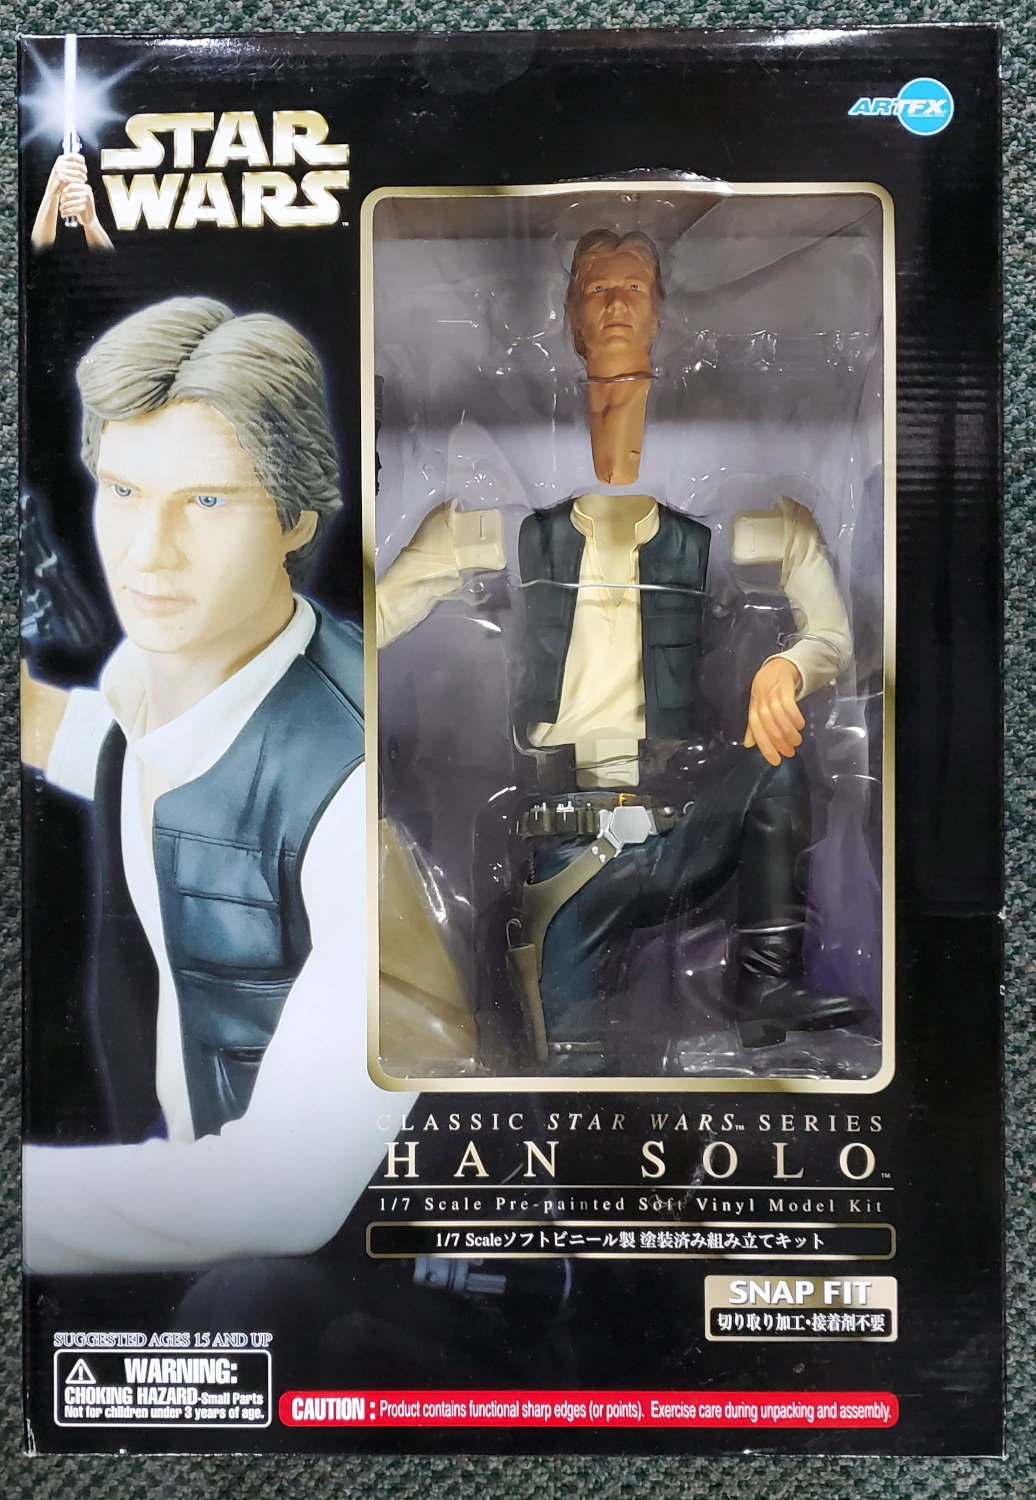 2004 Kotobukiya ArtFX Han Solo 1:7 Scale Soft Vinyl Model Kit in the Box 1